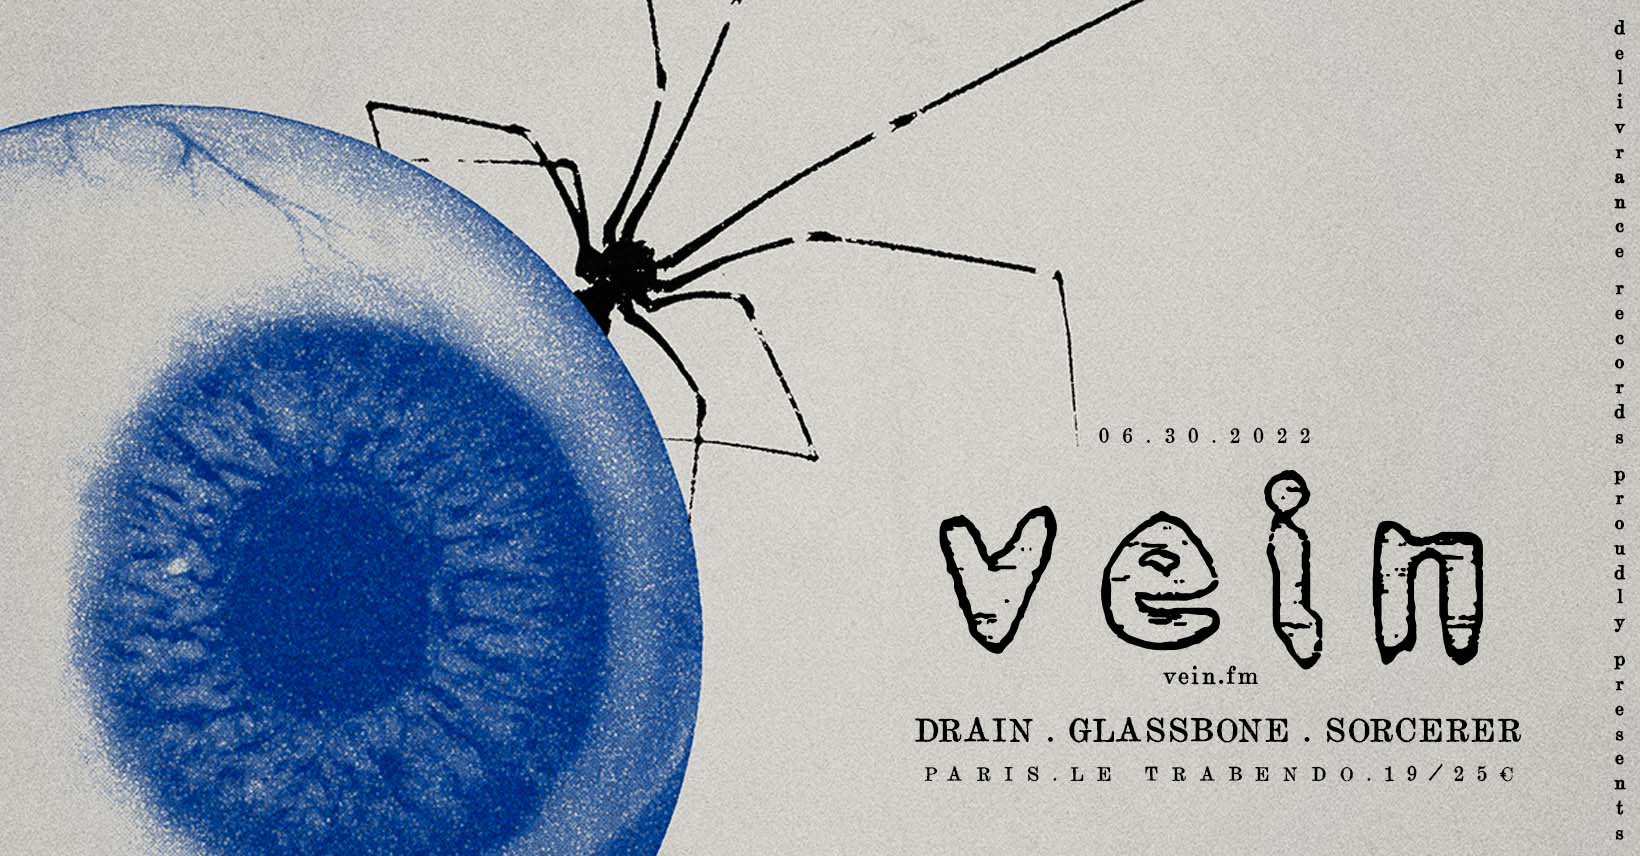 Vein.fm + Drain + Glassbone @ Trabendo (Paris), le 30 Juin 2022